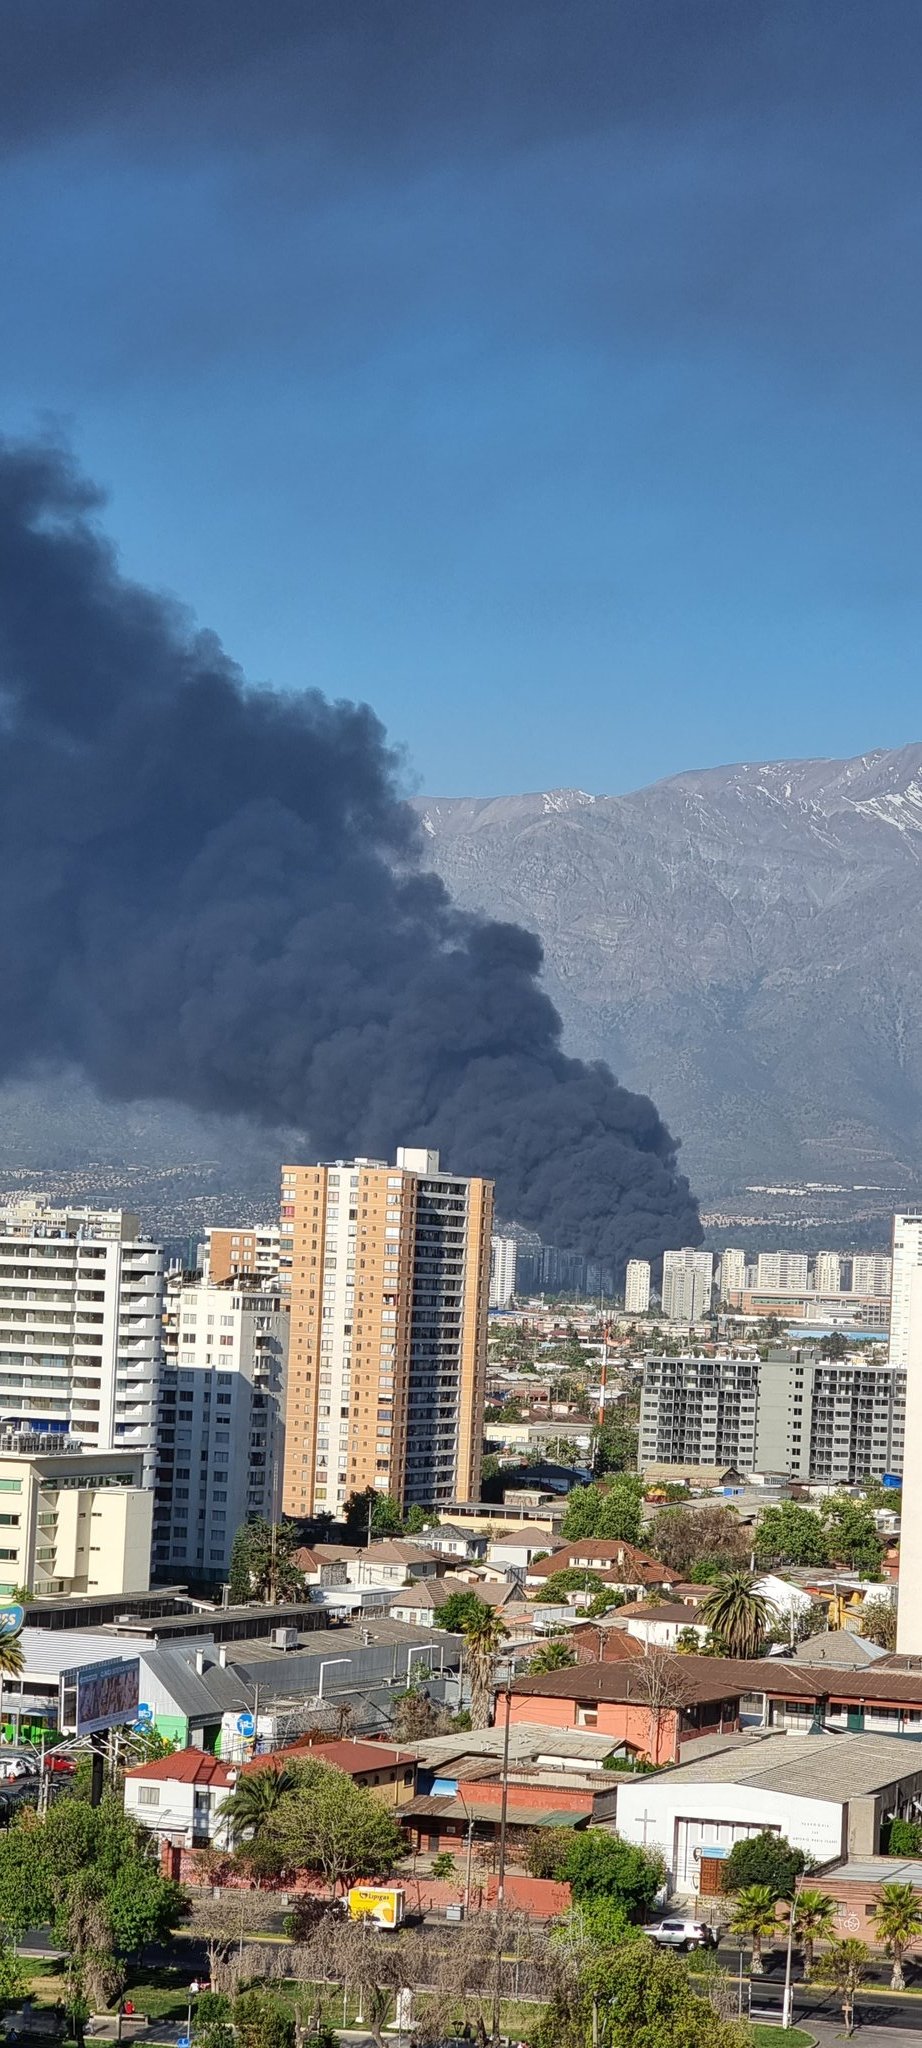 (Video) Voraz incendio en fábrica de Macul genera enorme nube tóxica: LLaman a los vecinos a evacuar viviendas aledañas